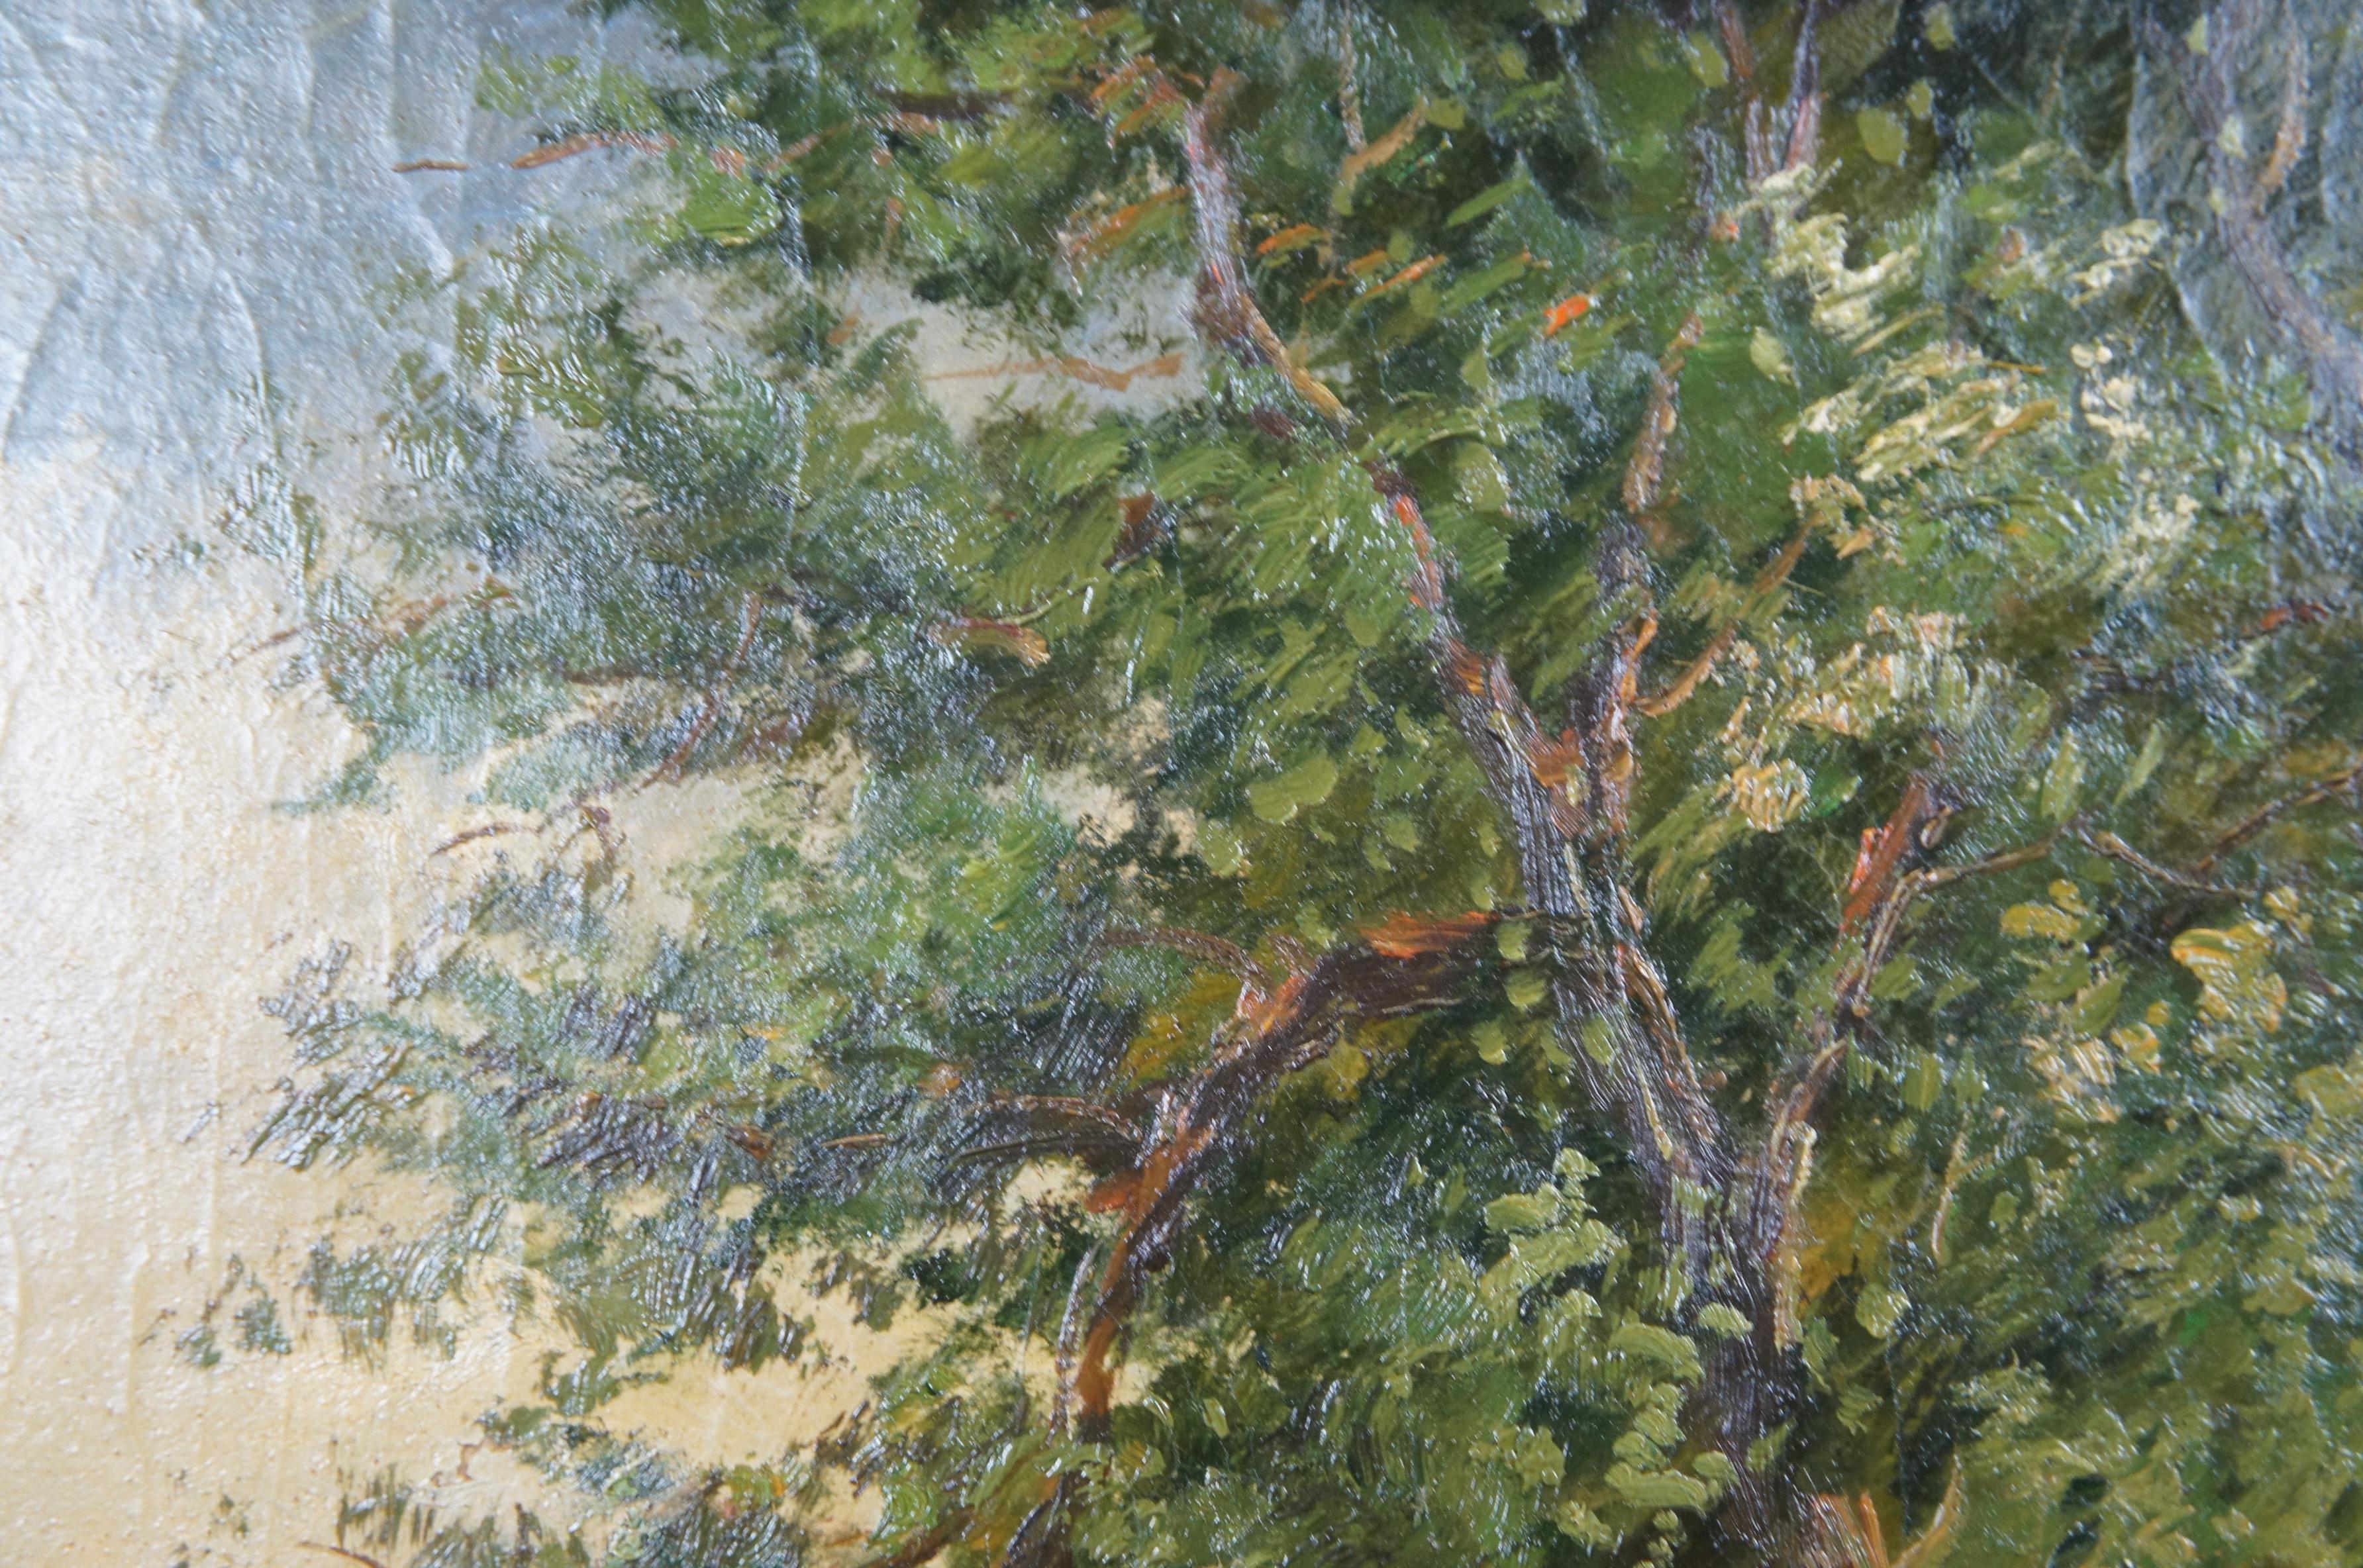 Grand portrait de paysage avec chien épagneul Springer, peinture à l'huile sur panneau 49